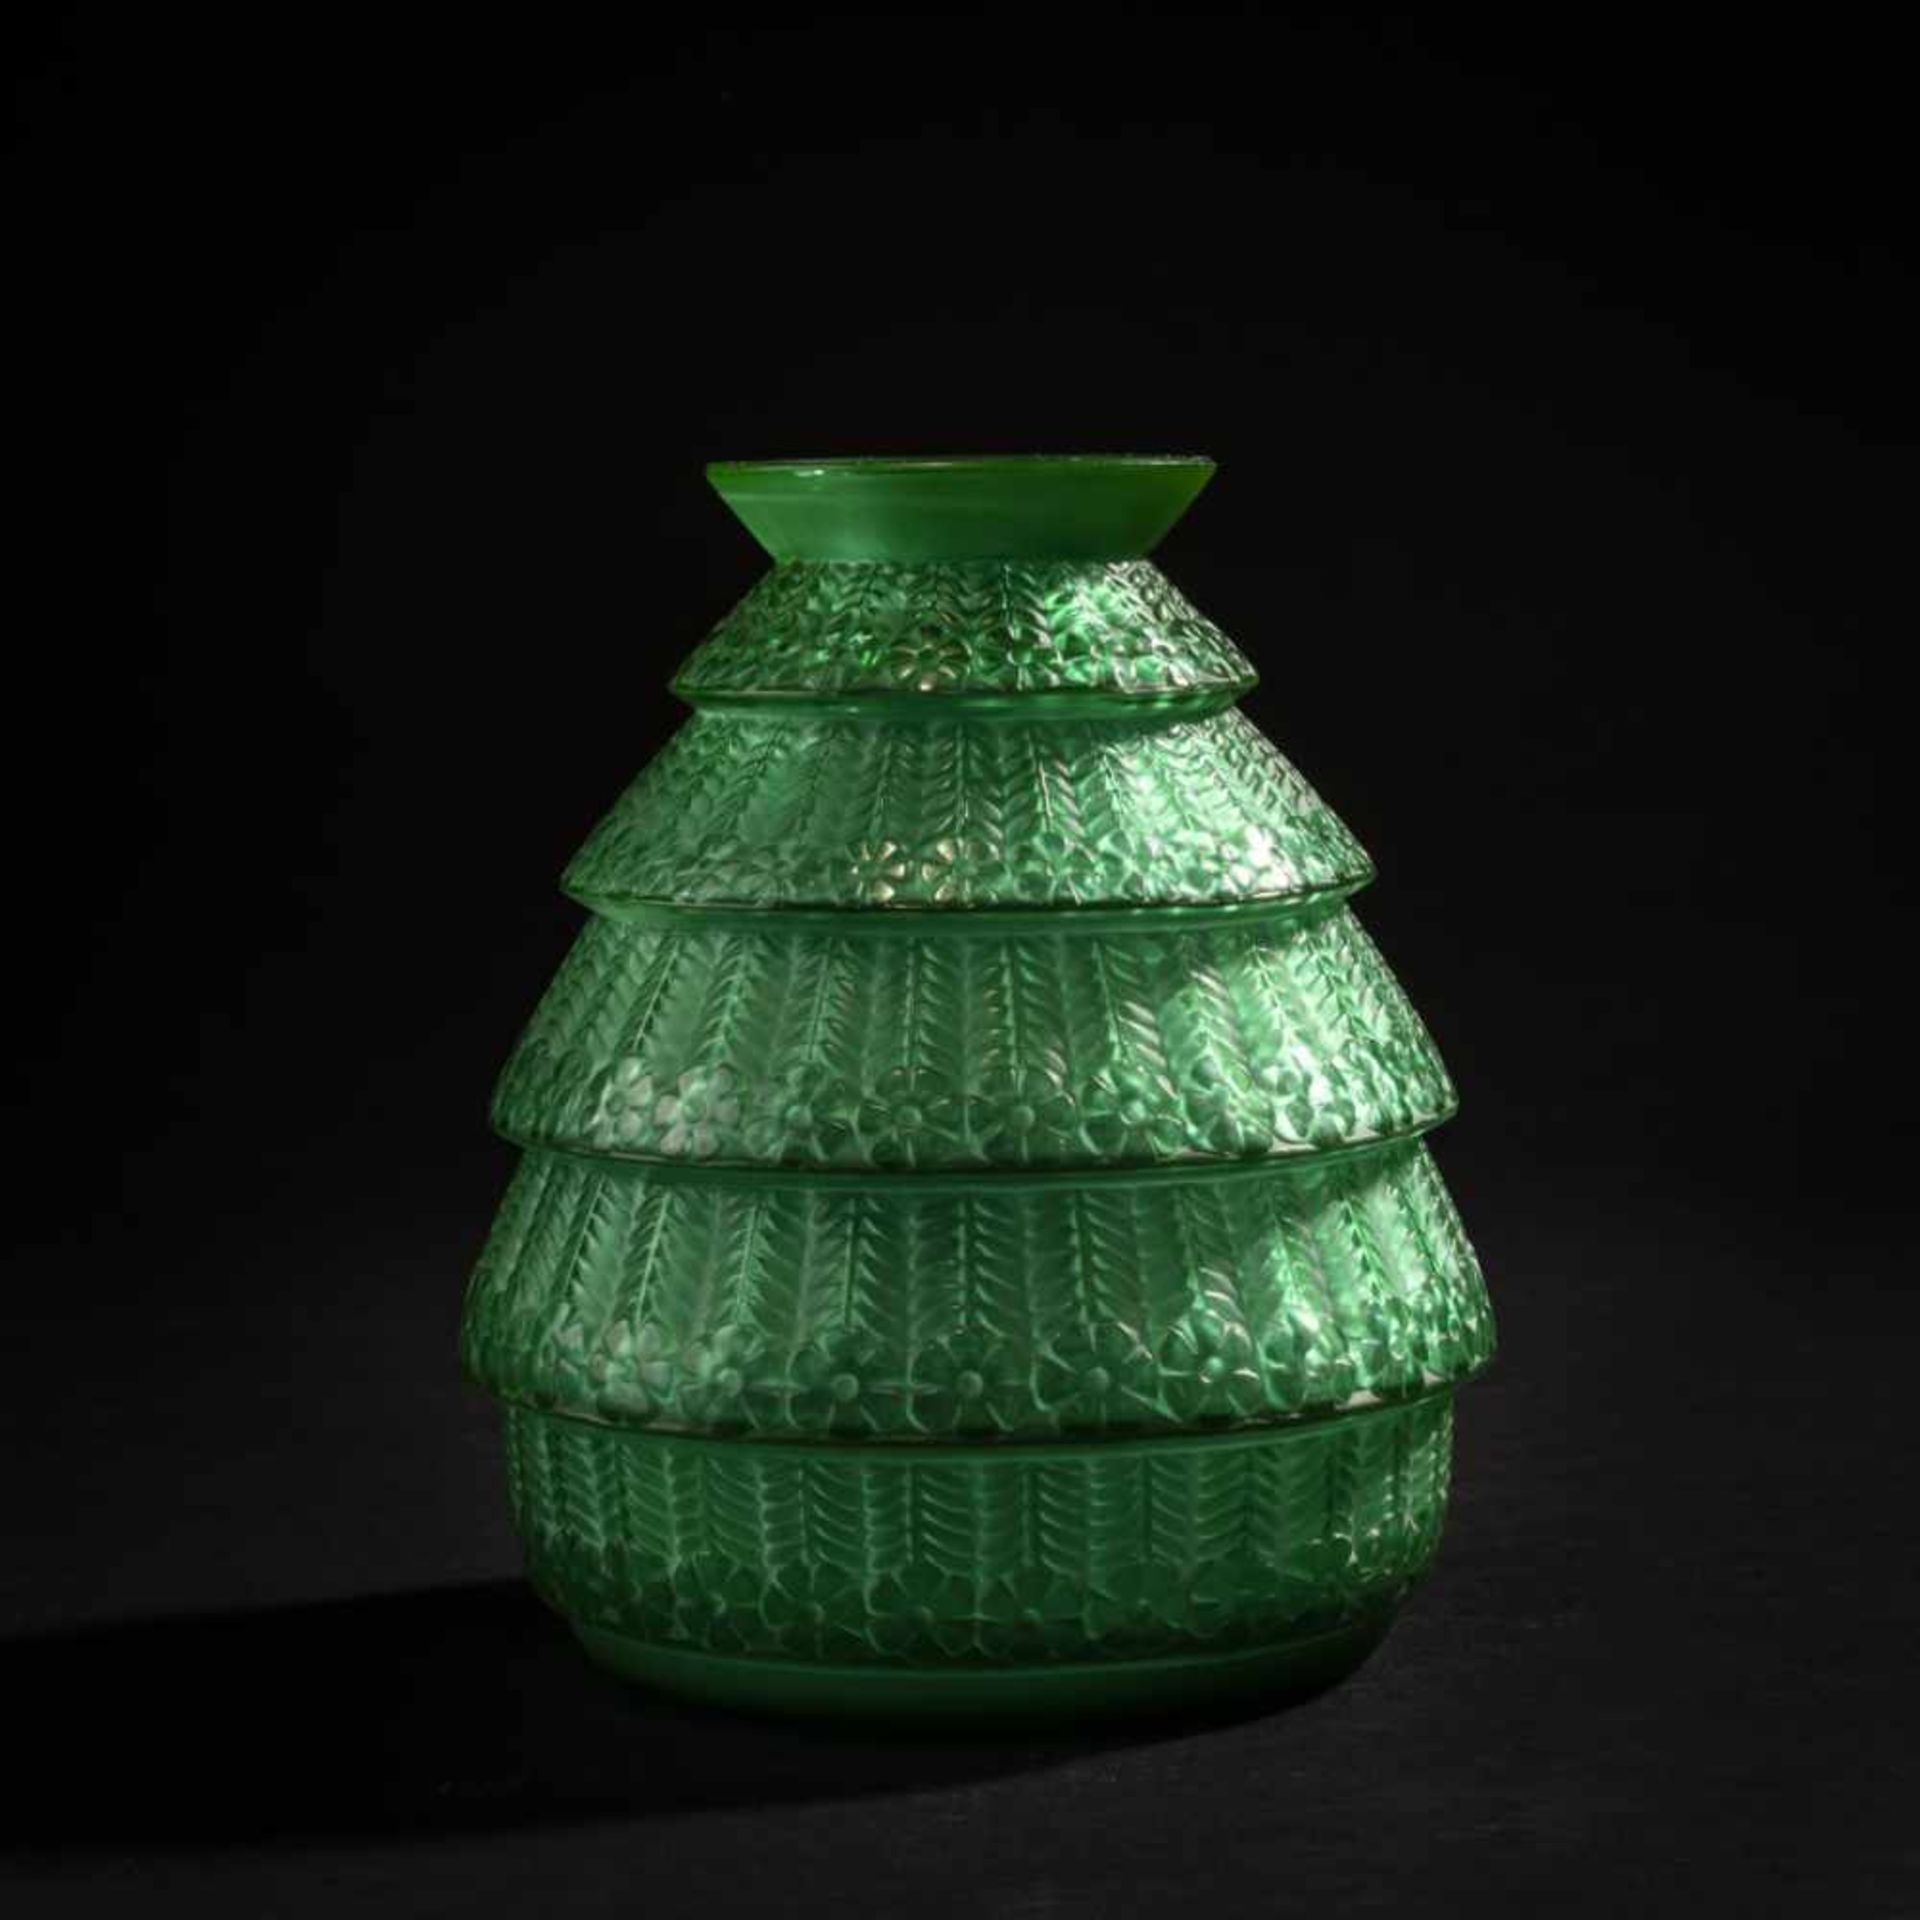 René Lalique, Vase 'Ferrières', 1929Vase 'Ferrières', 1929H. 17 cm. Green, mould-blown glass,